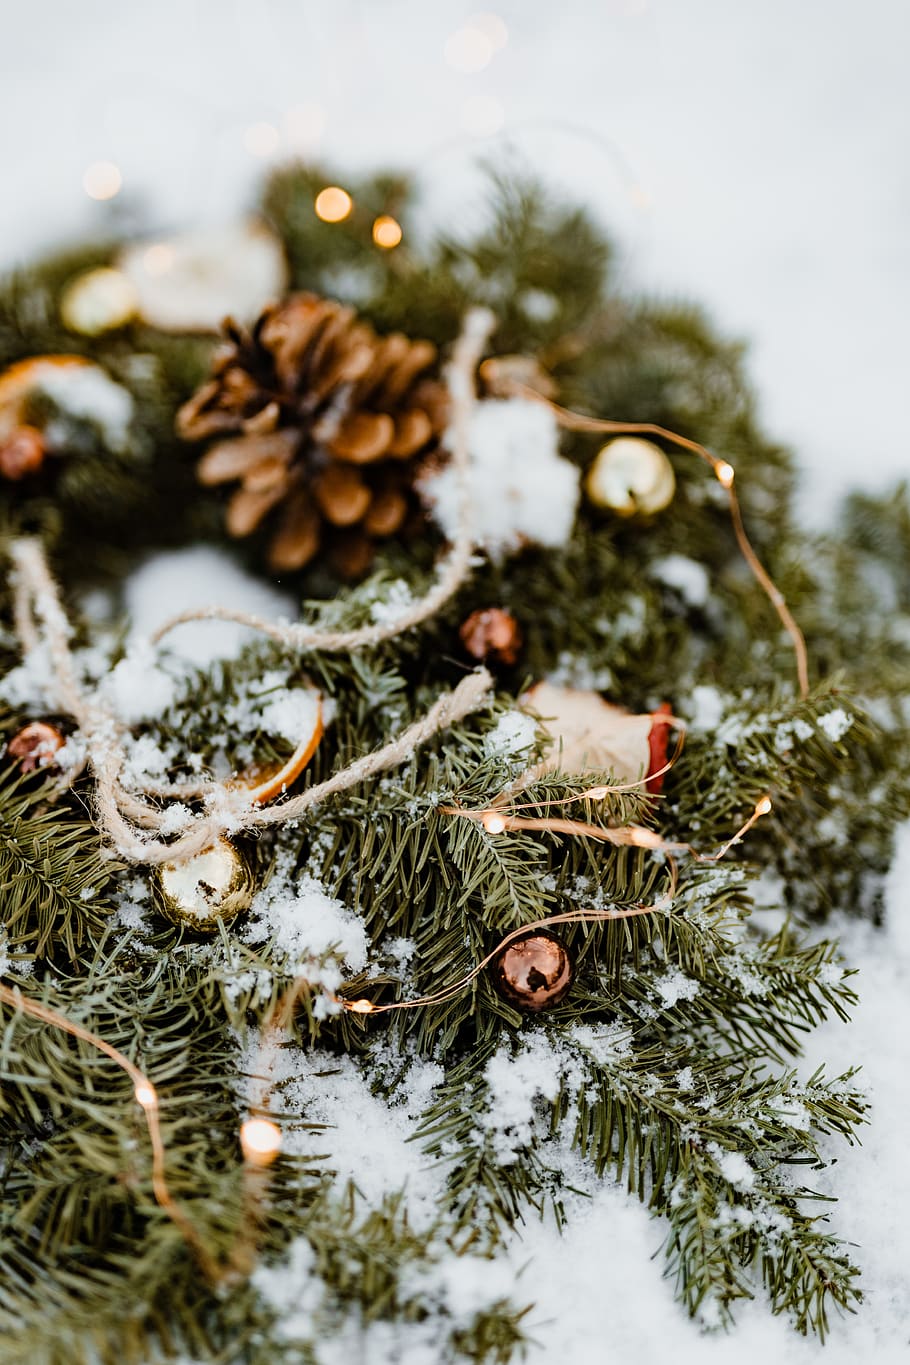 natal, decoração, decorações, dezembro, neve, Inverno, Coroa de flores, árvore, temperatura fria, planta